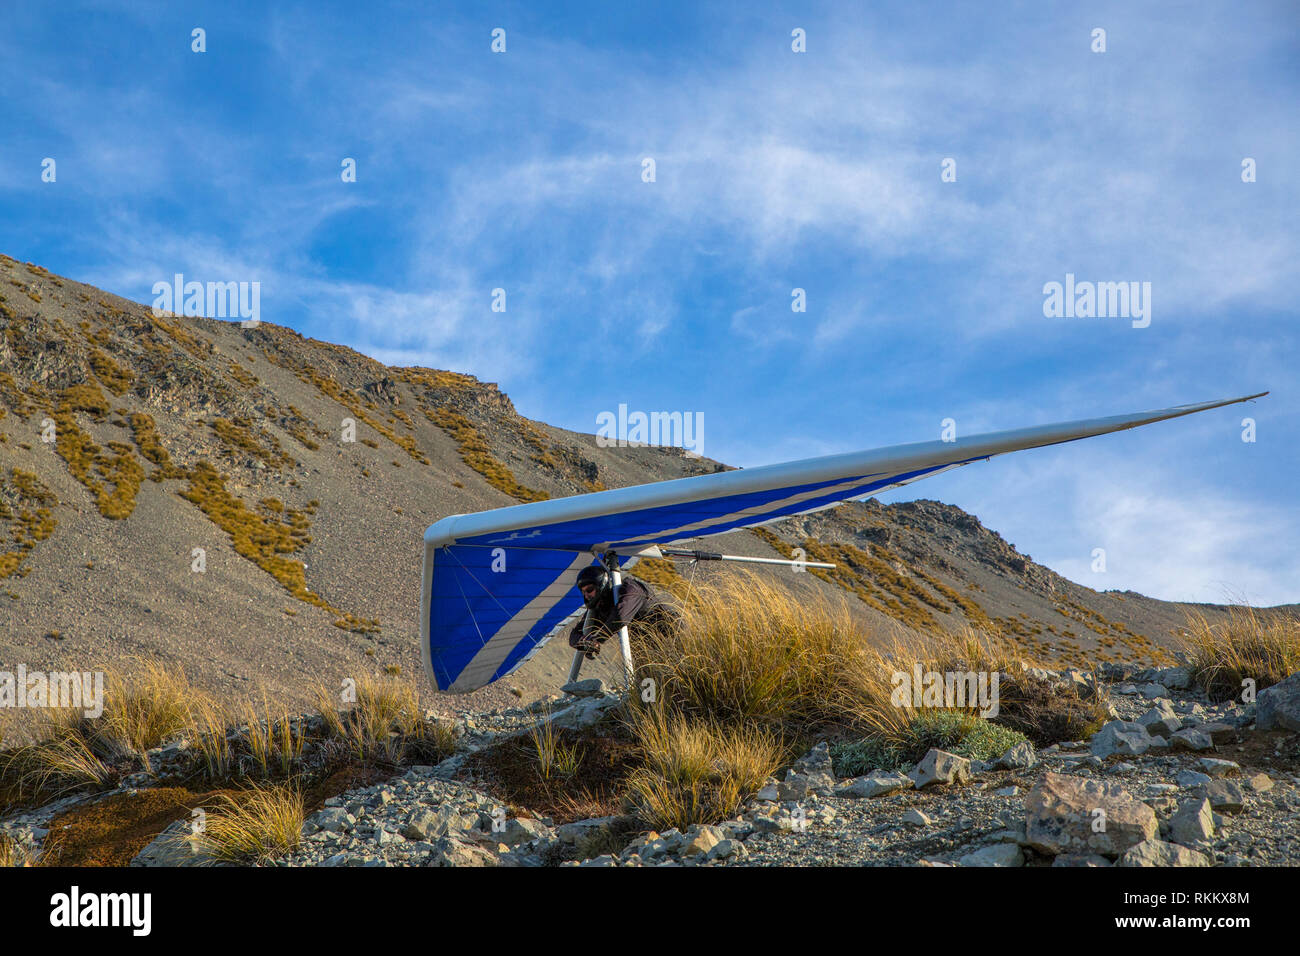 Ein hängegleiter bereitet sich von der Seite des Berges in die Luft zu nehmen Stockfoto